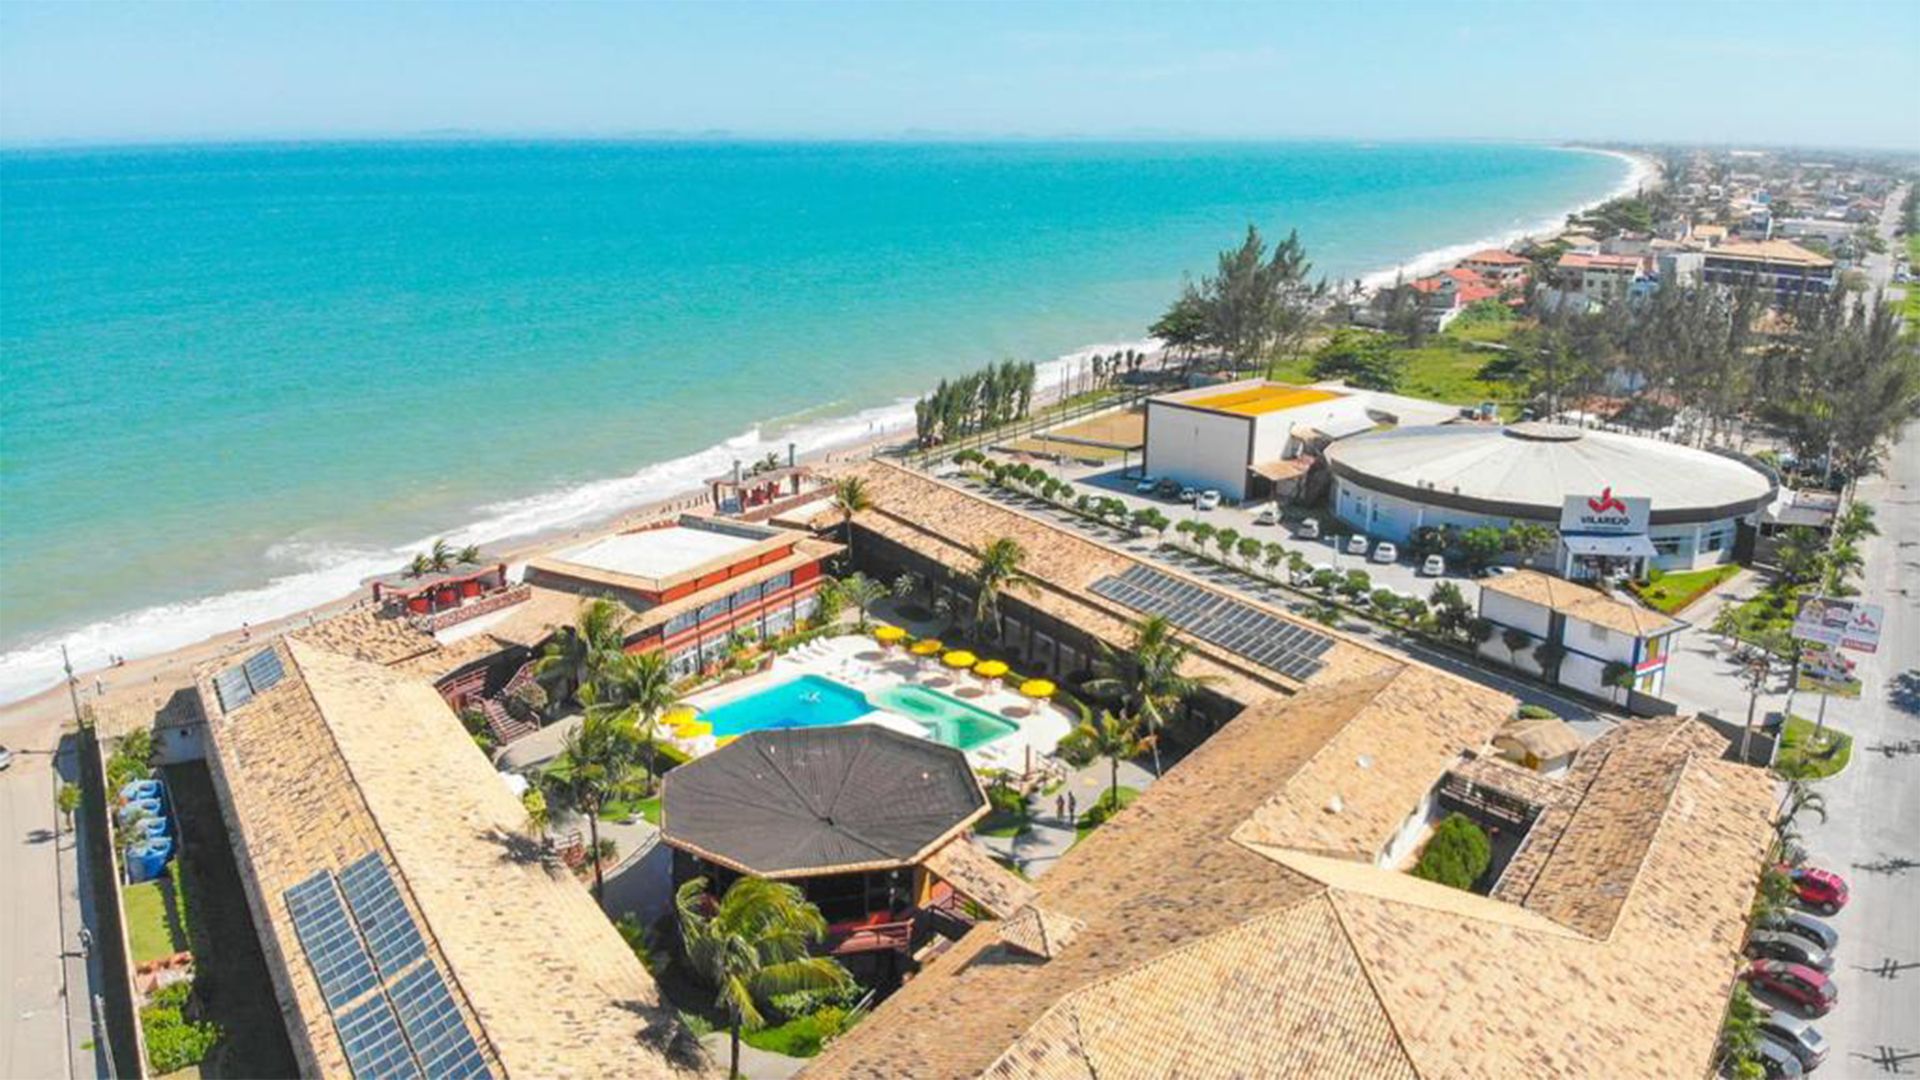 Vilarejo Praia Hotel